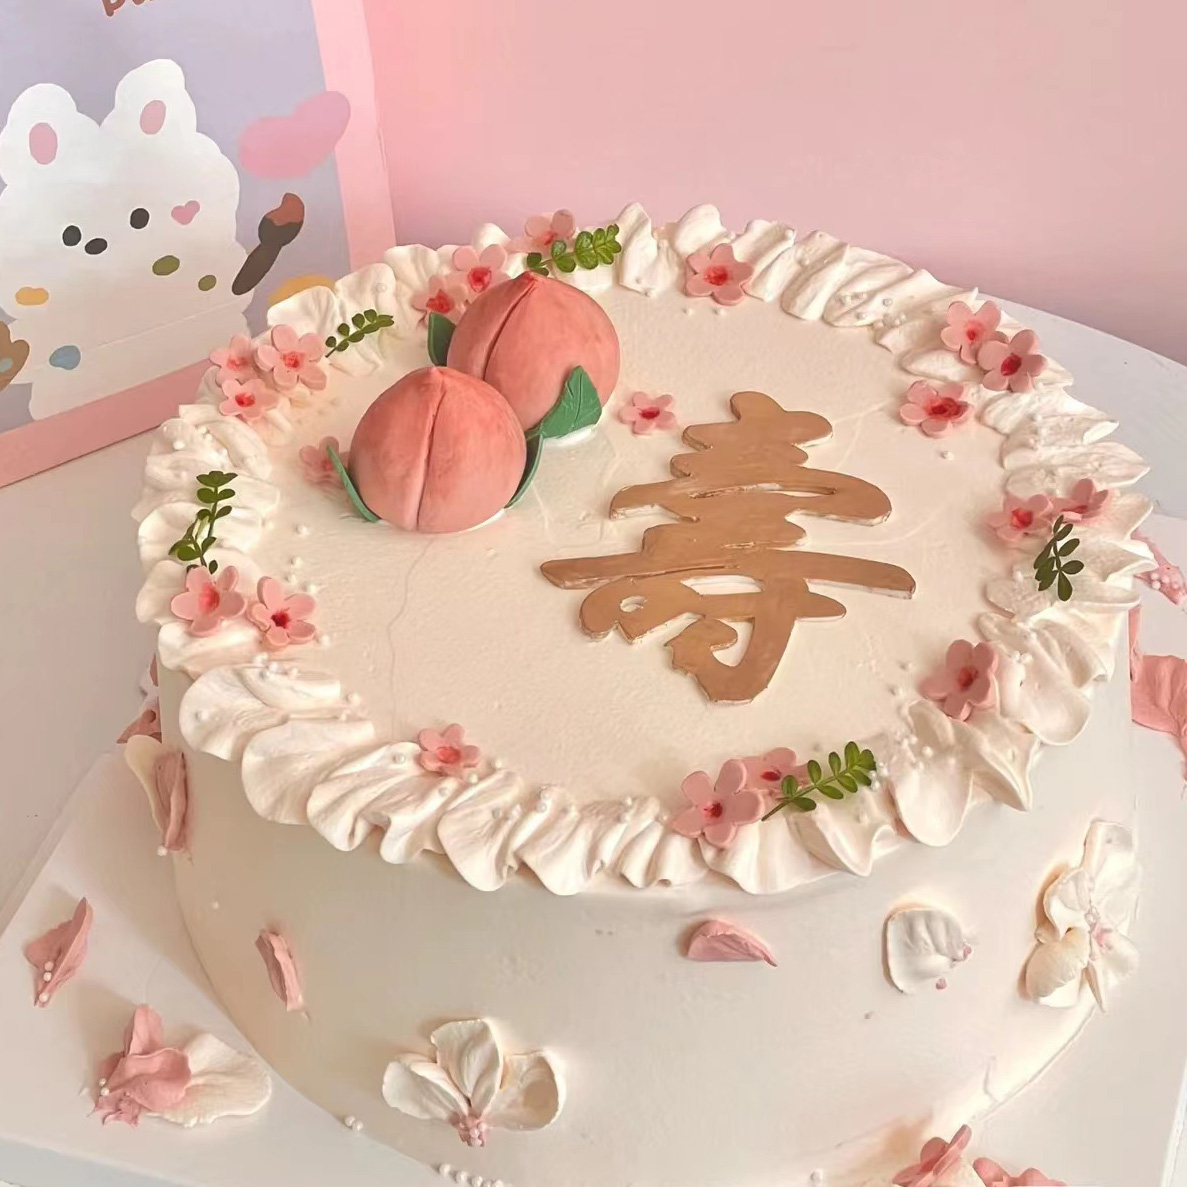 【寿桃蛋糕】祝寿蛋糕